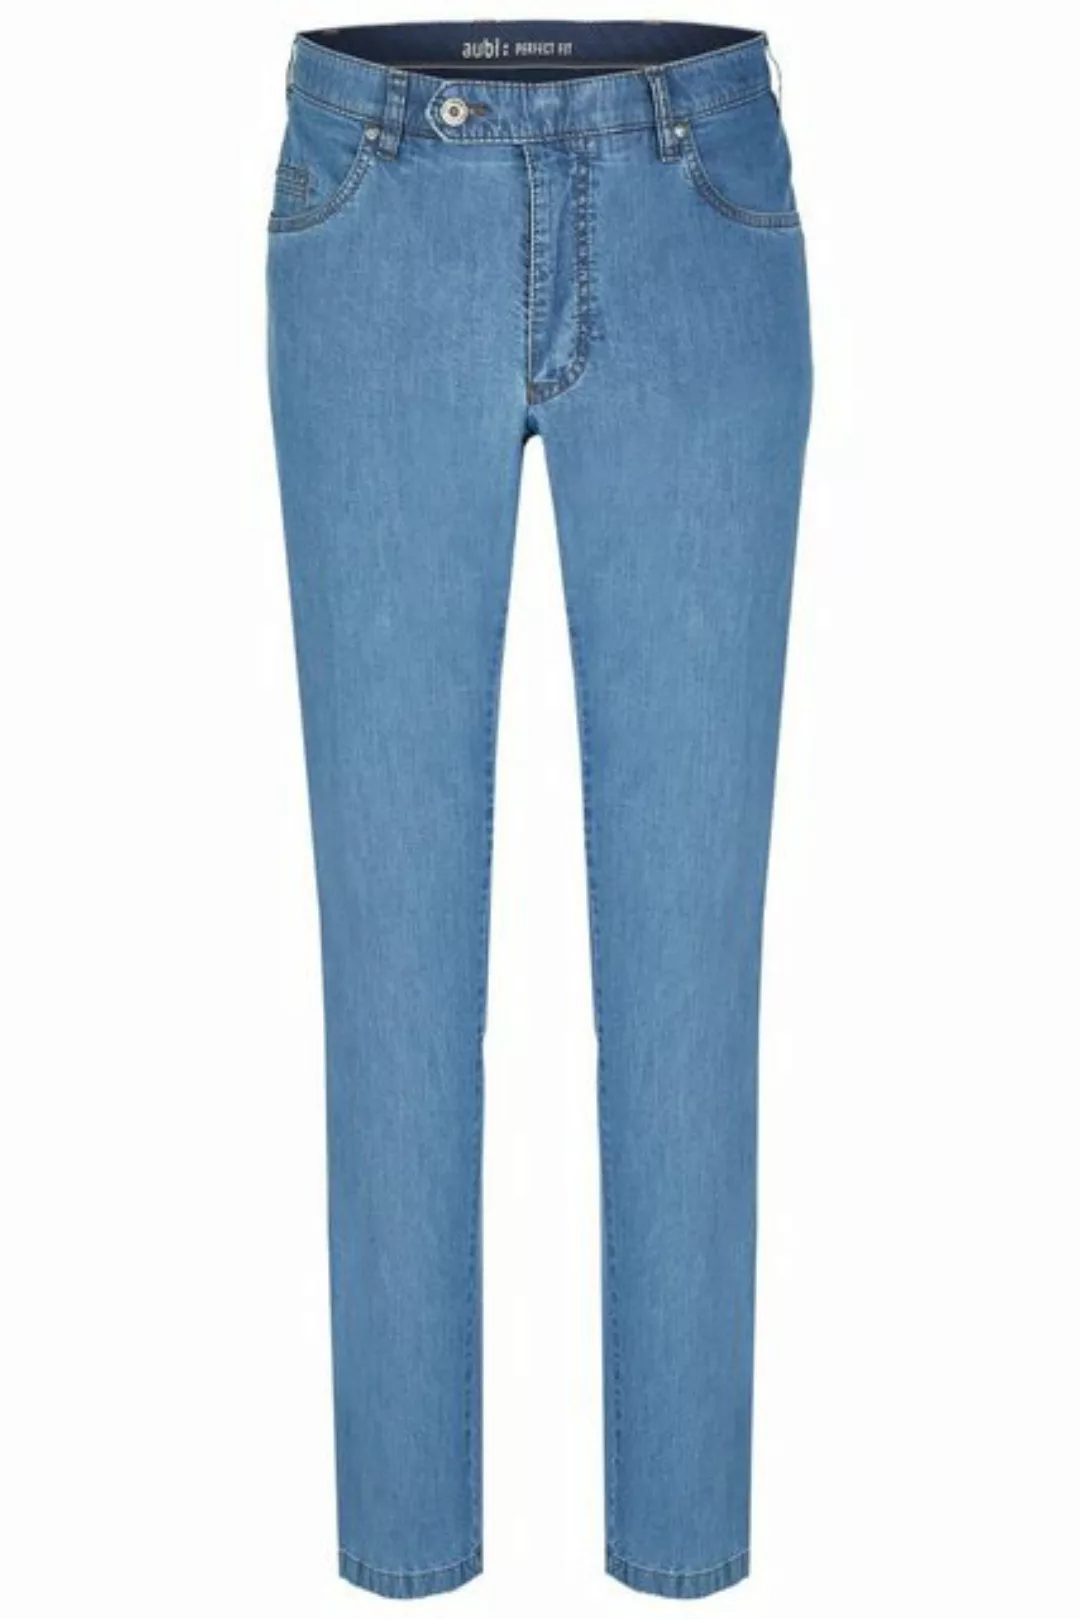 aubi: Bequeme Jeans aubi Perfect Fit Herren Sommer Jeans Hose Stretch aus B günstig online kaufen